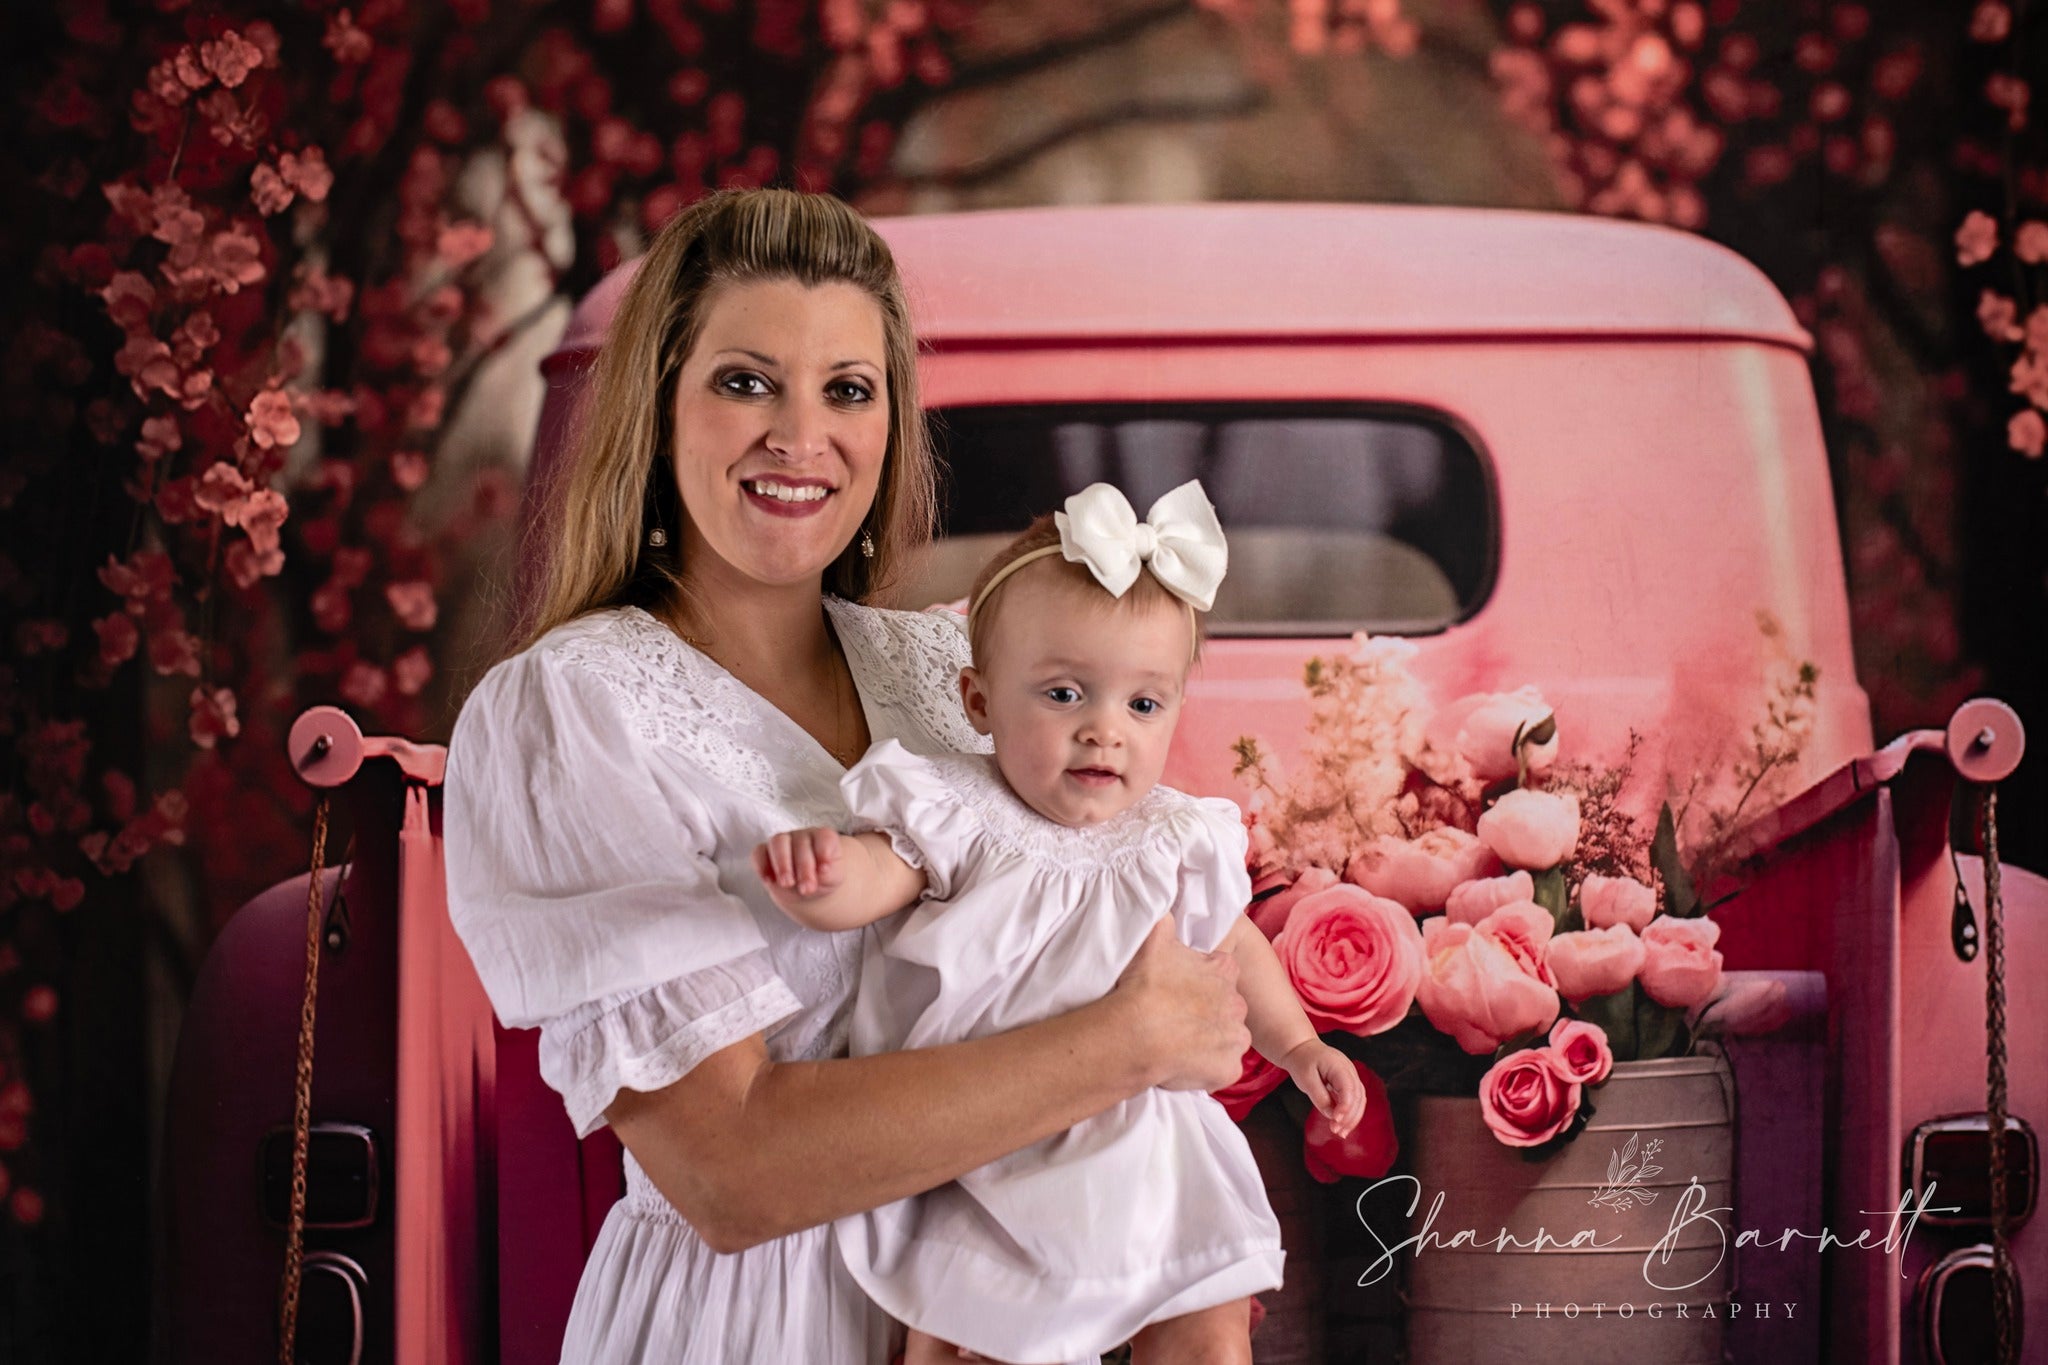 Kate Saint Valentin Rose Fleurs Camion Toile de fond conçue par Chain Photographie